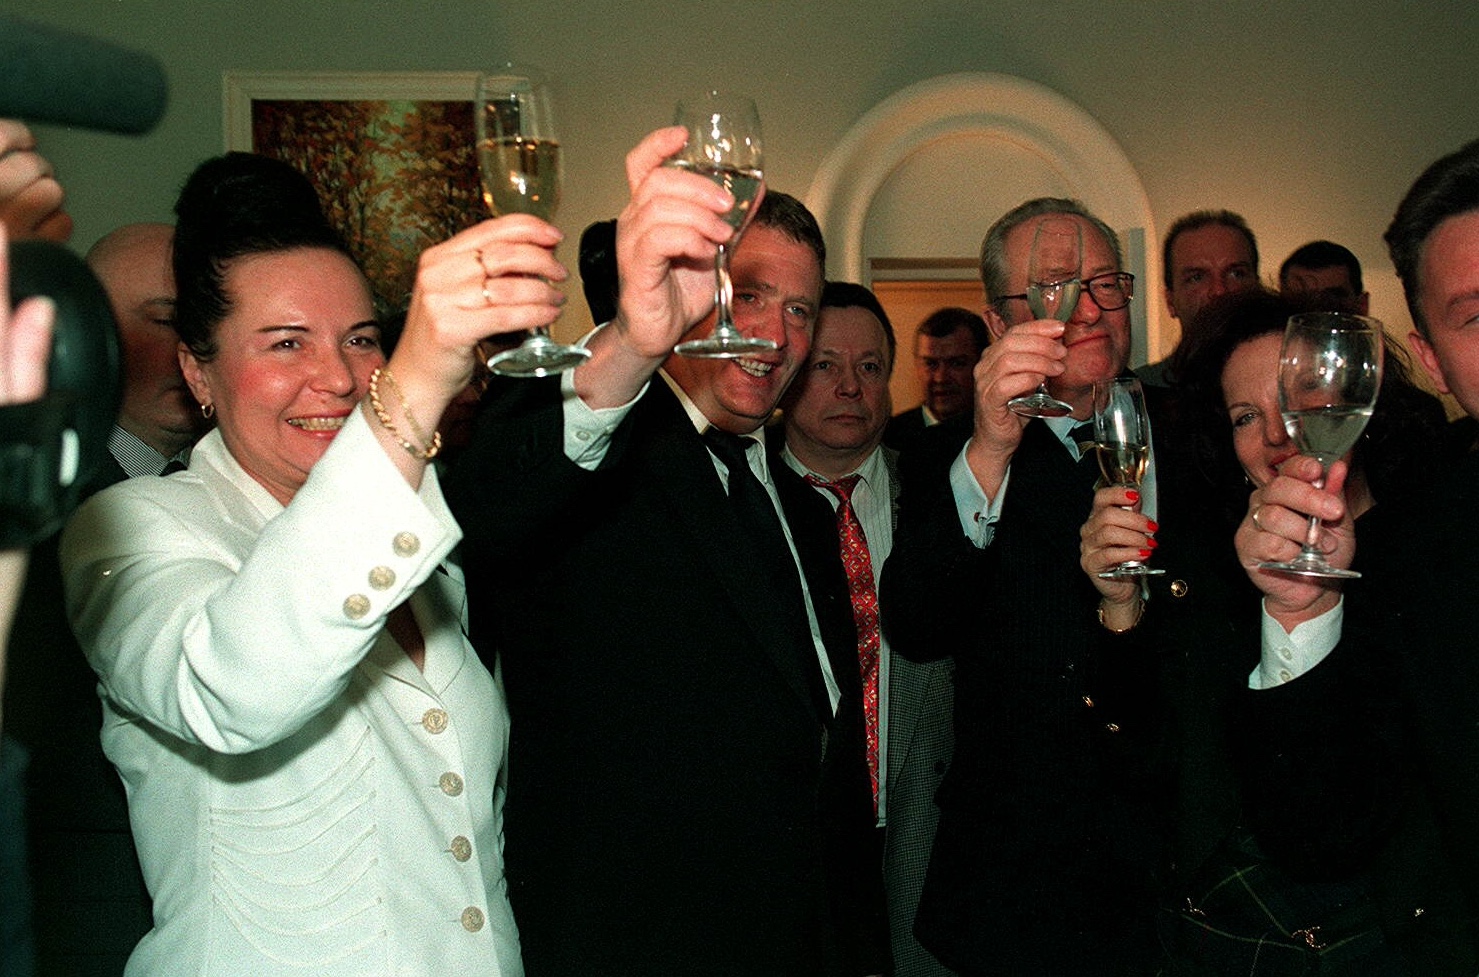 Moscou, 1996: le leader ultranationaliste russe Vladimir Jirinovski fête son anniversaire de mariage avec Jean-Marie Le Pen et d'autres amis. © Shone Nesic/SIPA